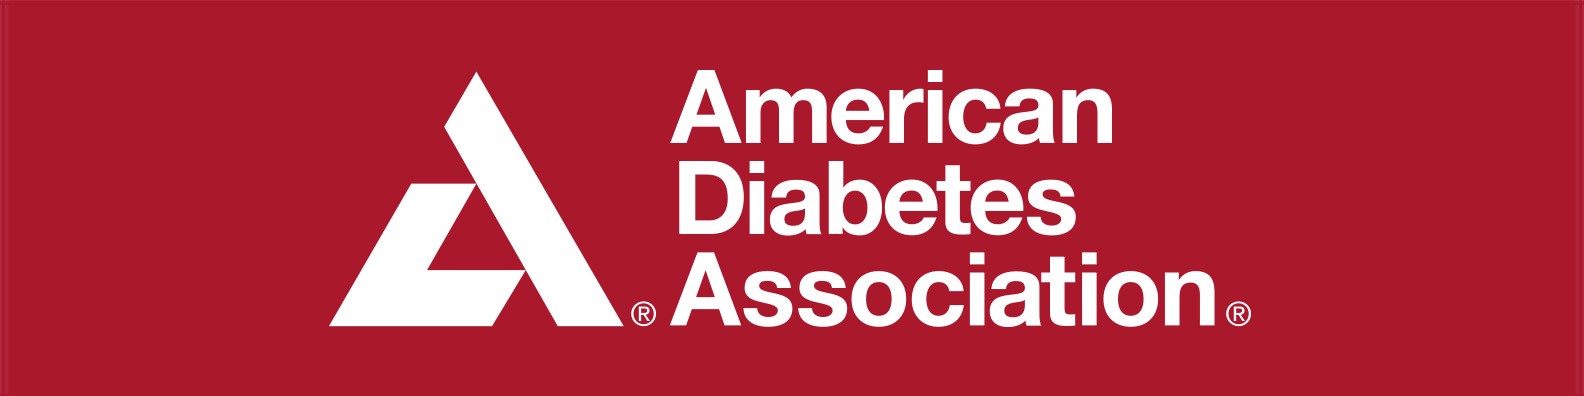 american diabetes association facebook inzulinrezisztencia látásromlás